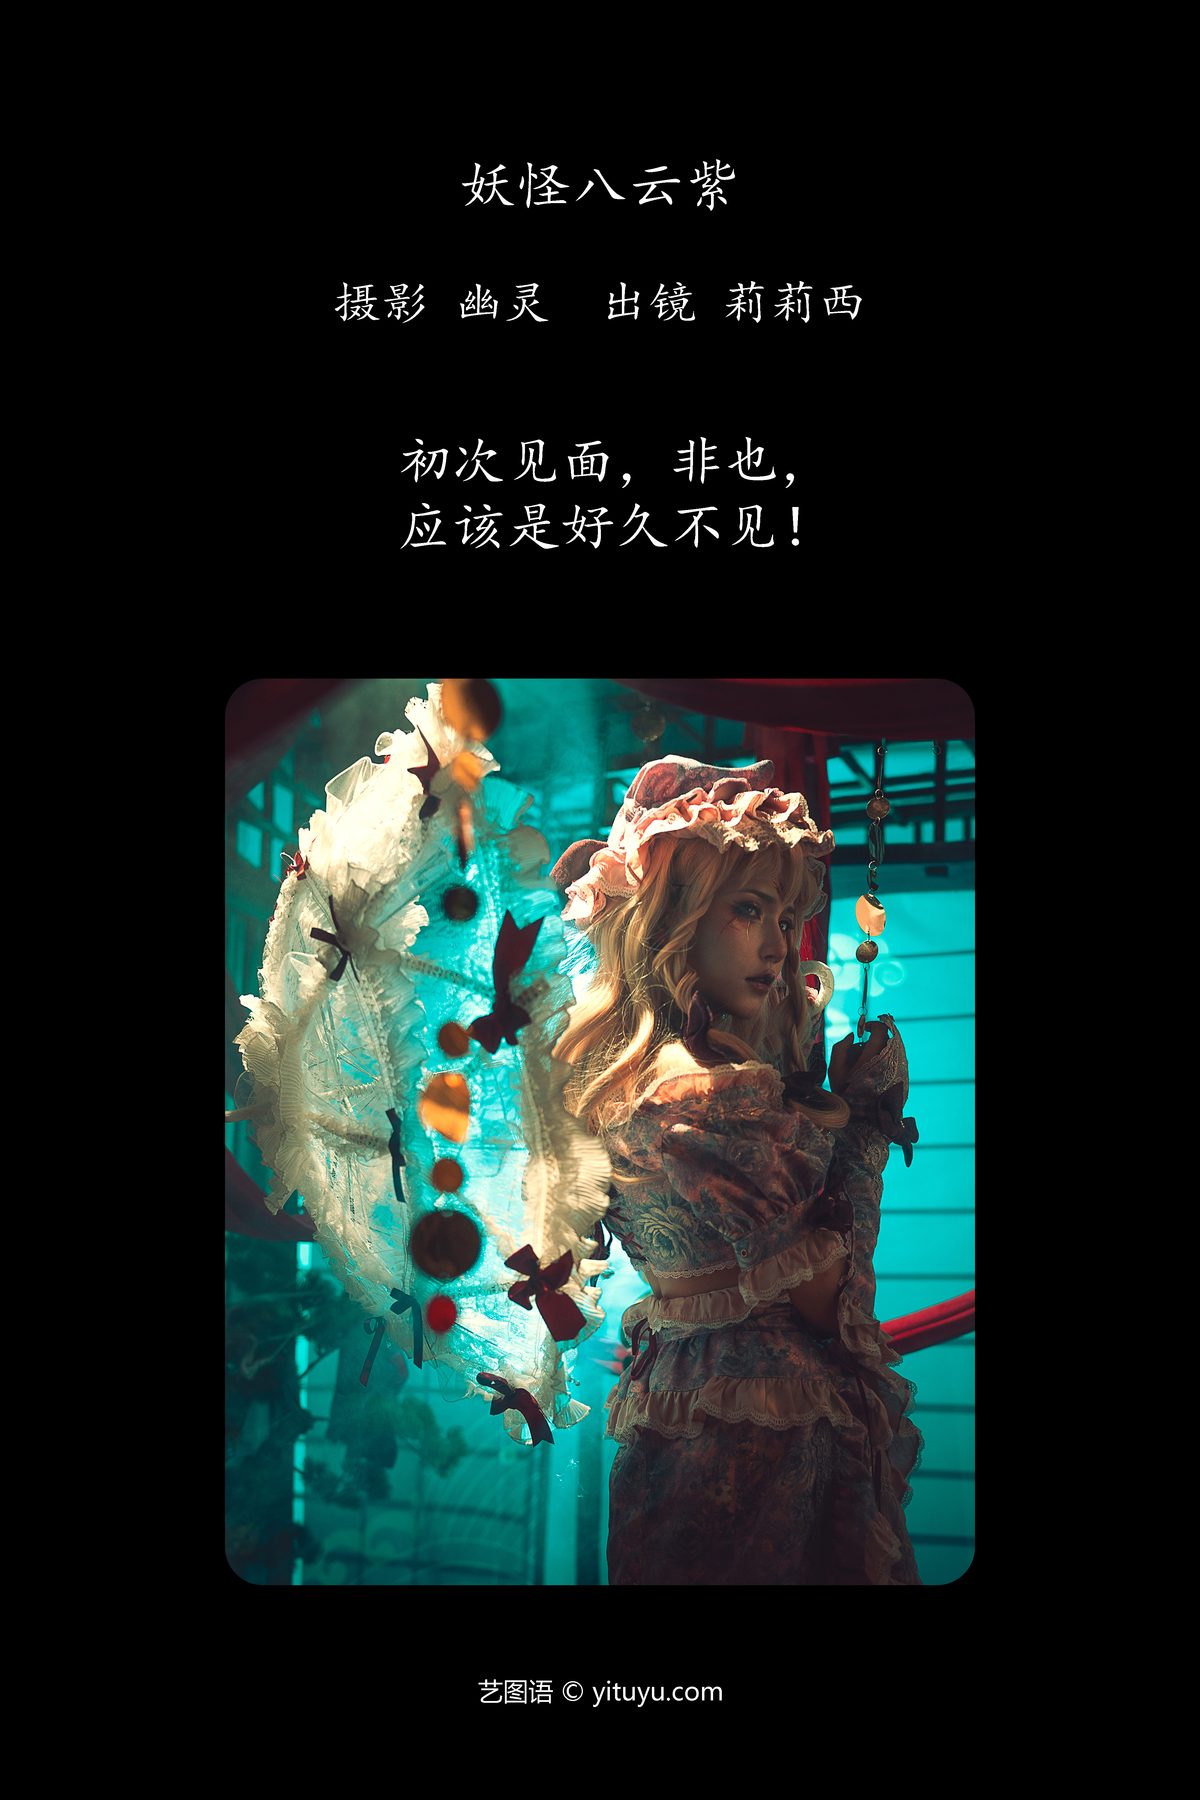 YiTuYu艺图语 Vol 4738 Xiao Zhen Tan Li Li Xi 0001 6599086920.jpg